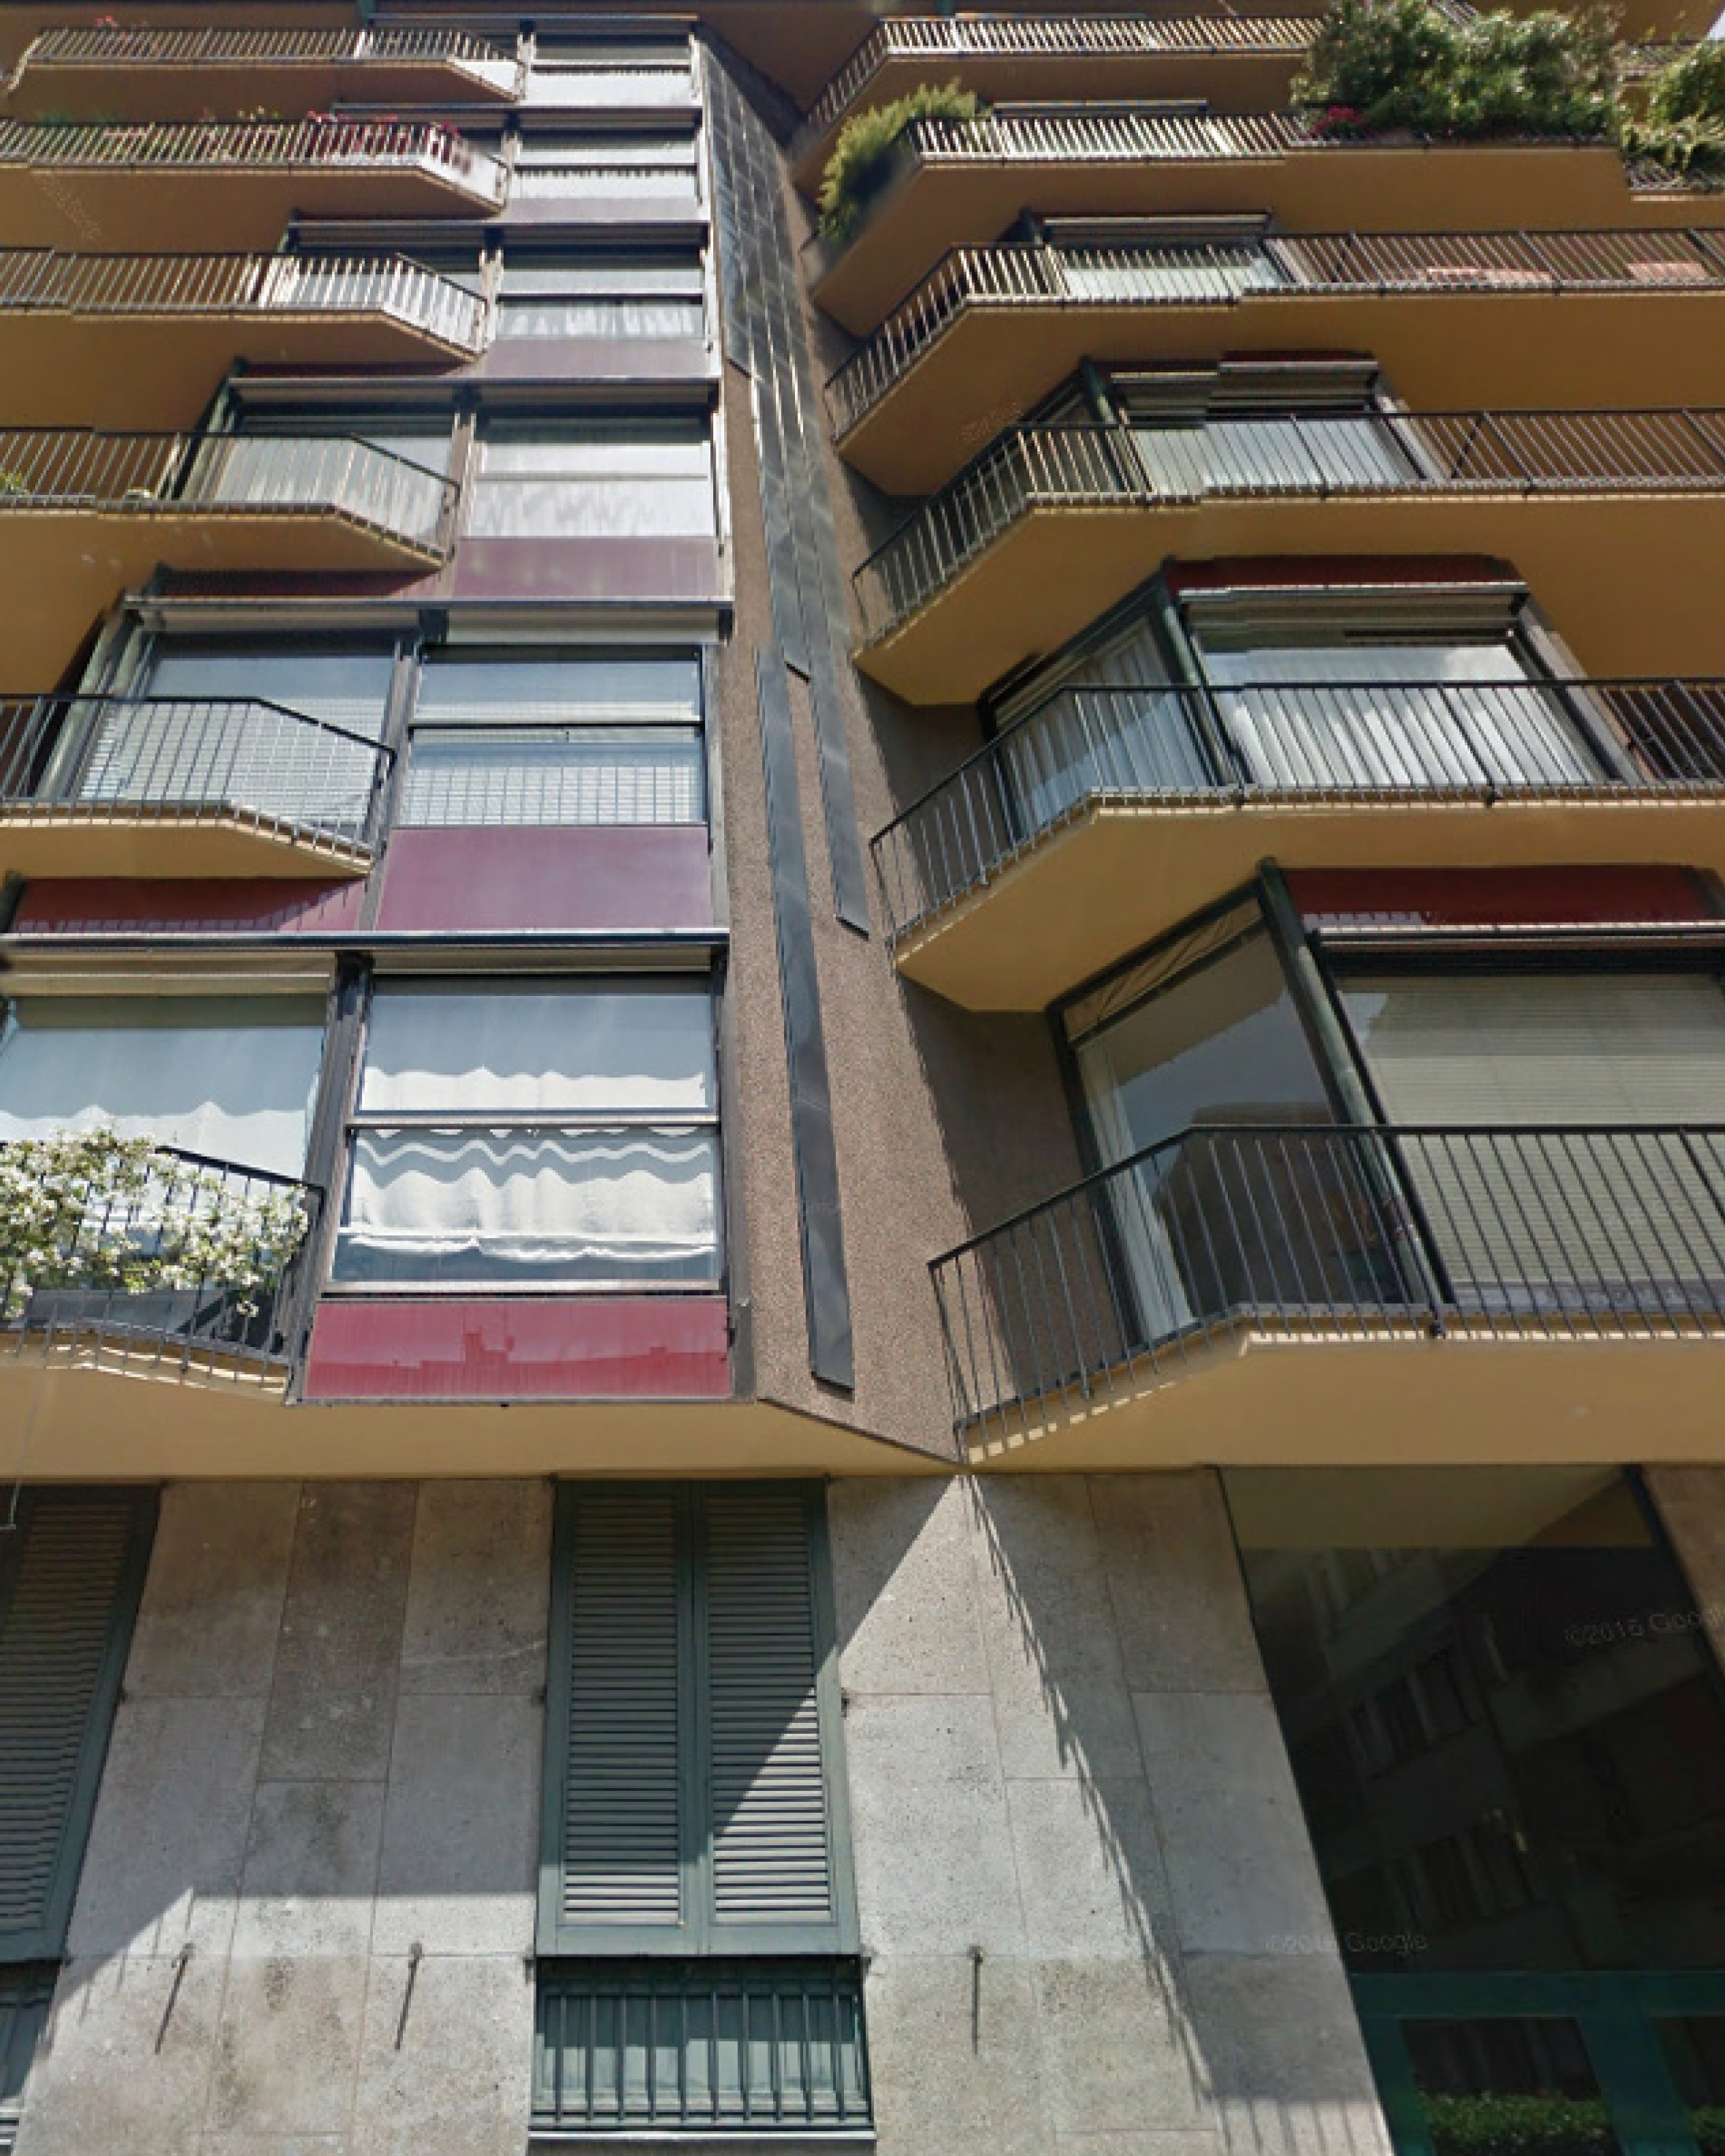 Immeuble d’habitation via Vigoni 13, Milano. 1957